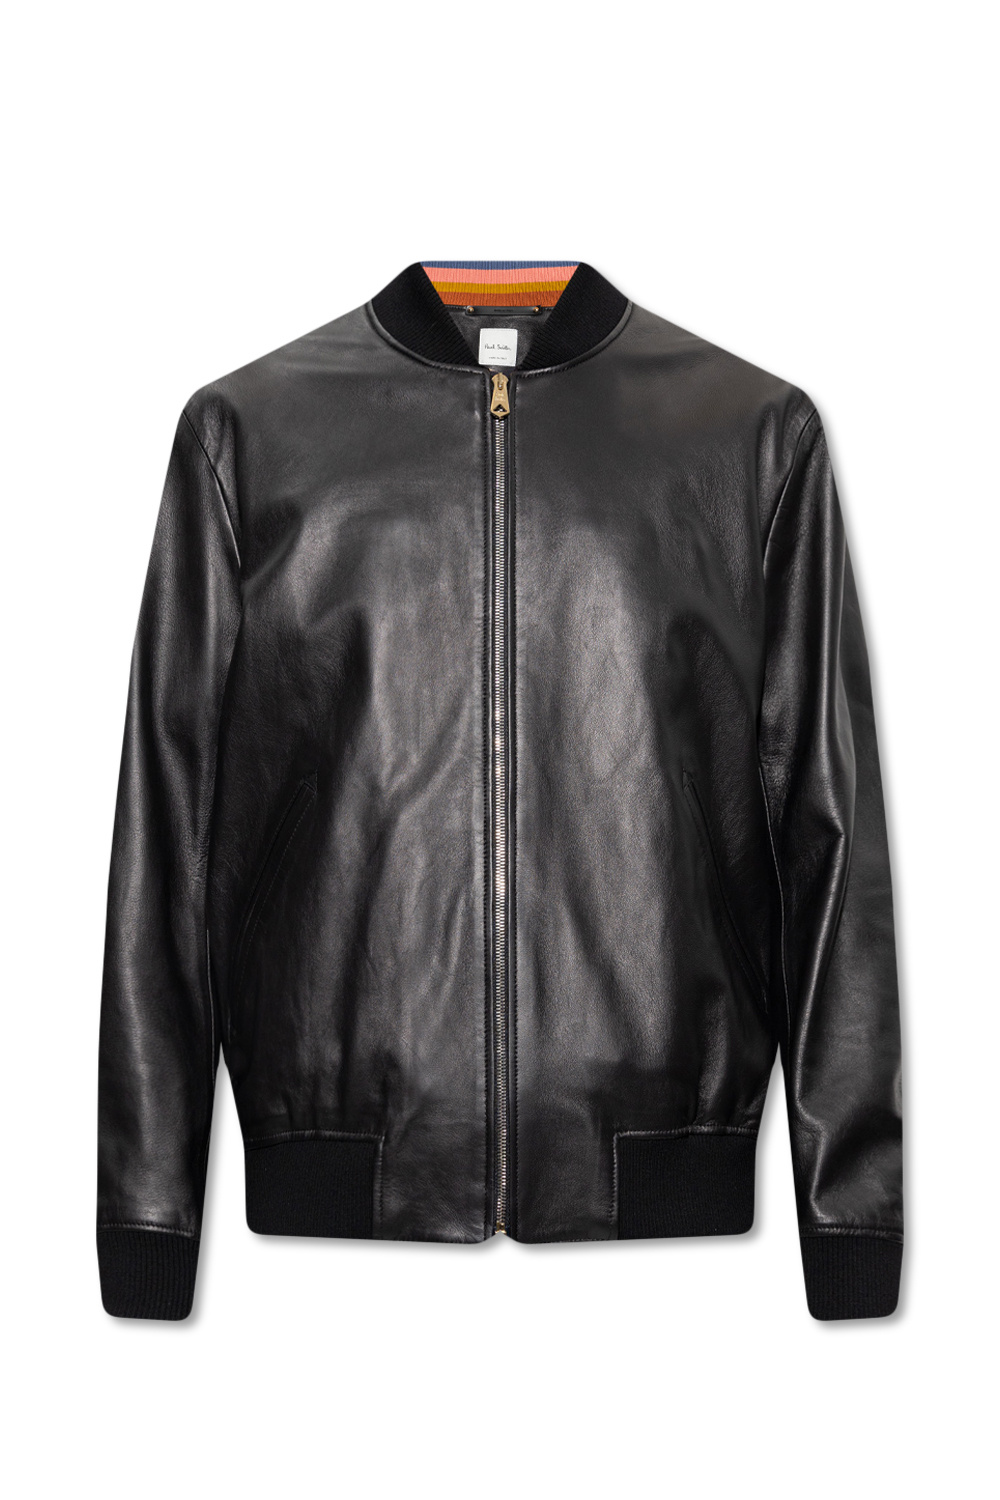 Paul Smith Leather bomber jacket | Men's Clothing | Vitkac